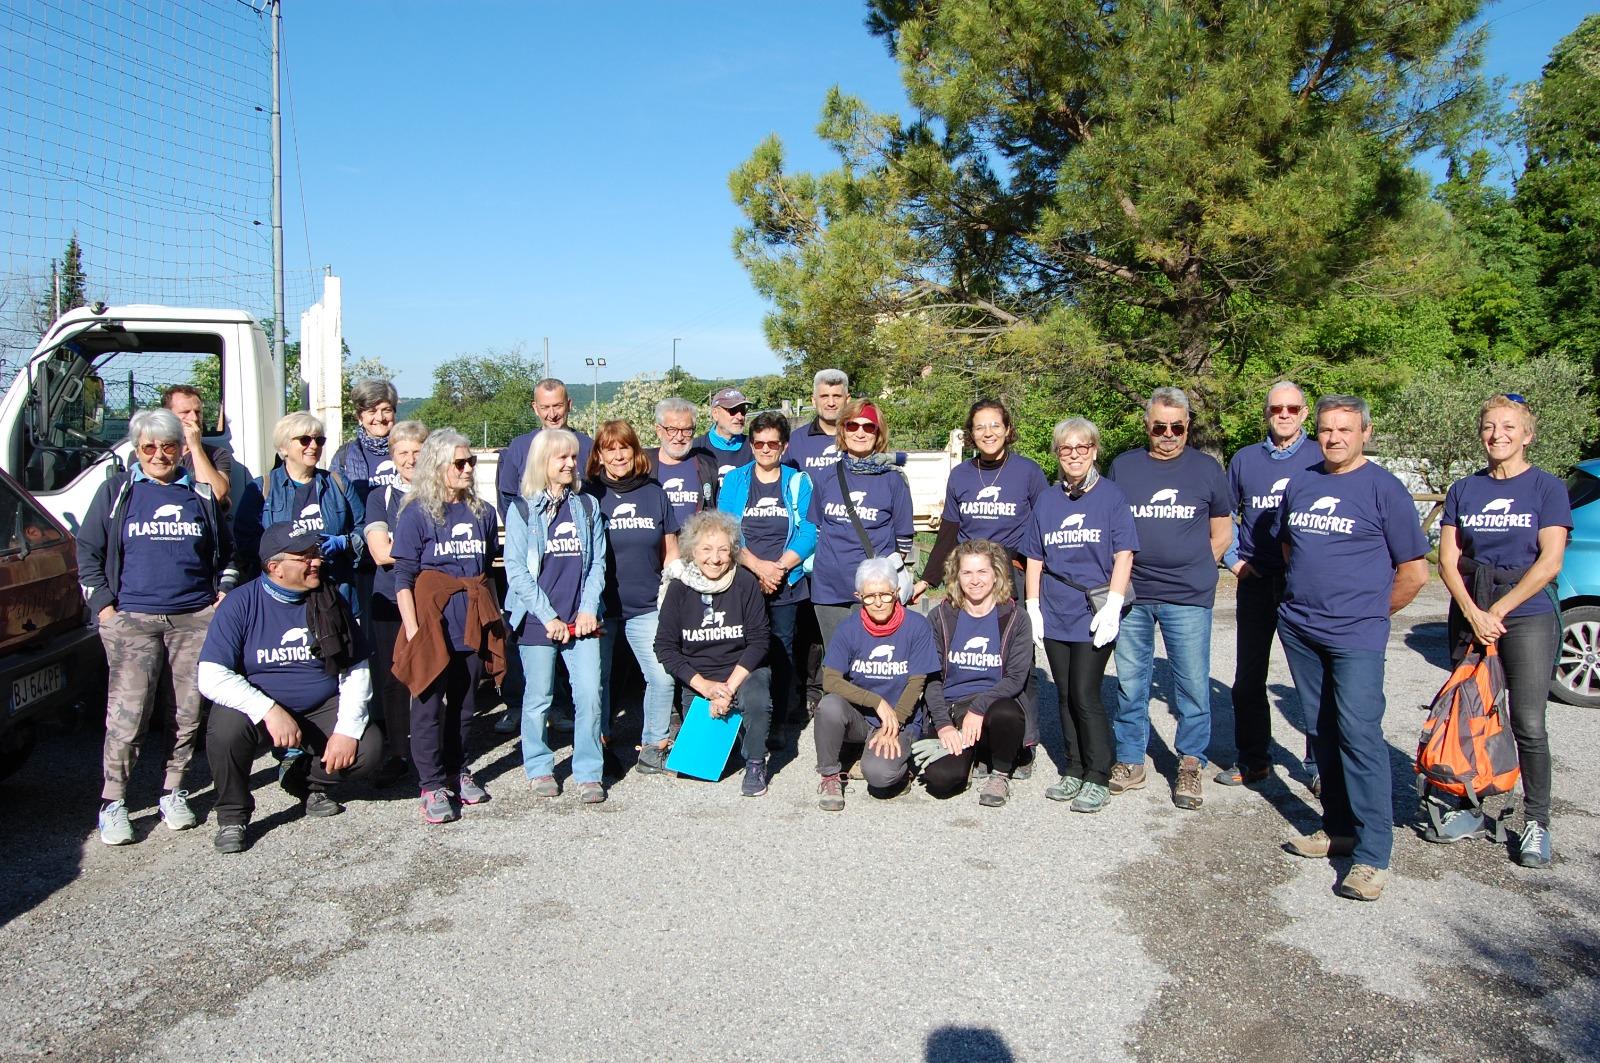 Grande successo per la pulizia ambientale Plastic Free in località Romagnano a Grezzana (VR)